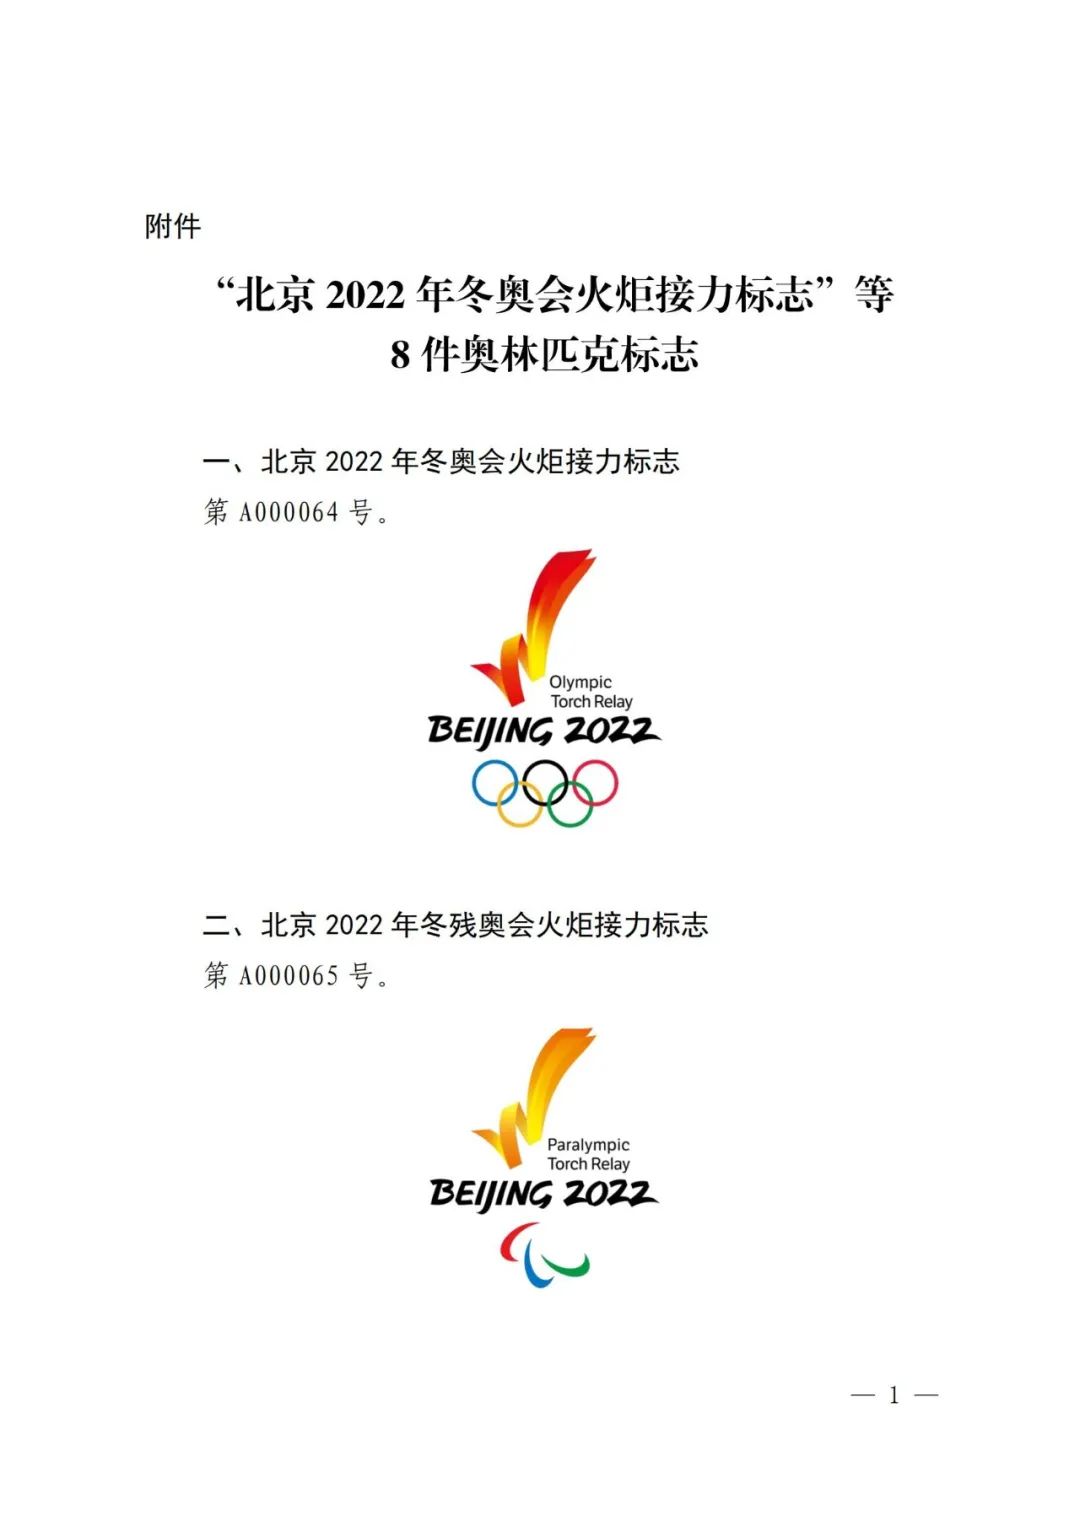 国知局对北京2022年冬奥会火炬接力标志等标志实施保护的公告